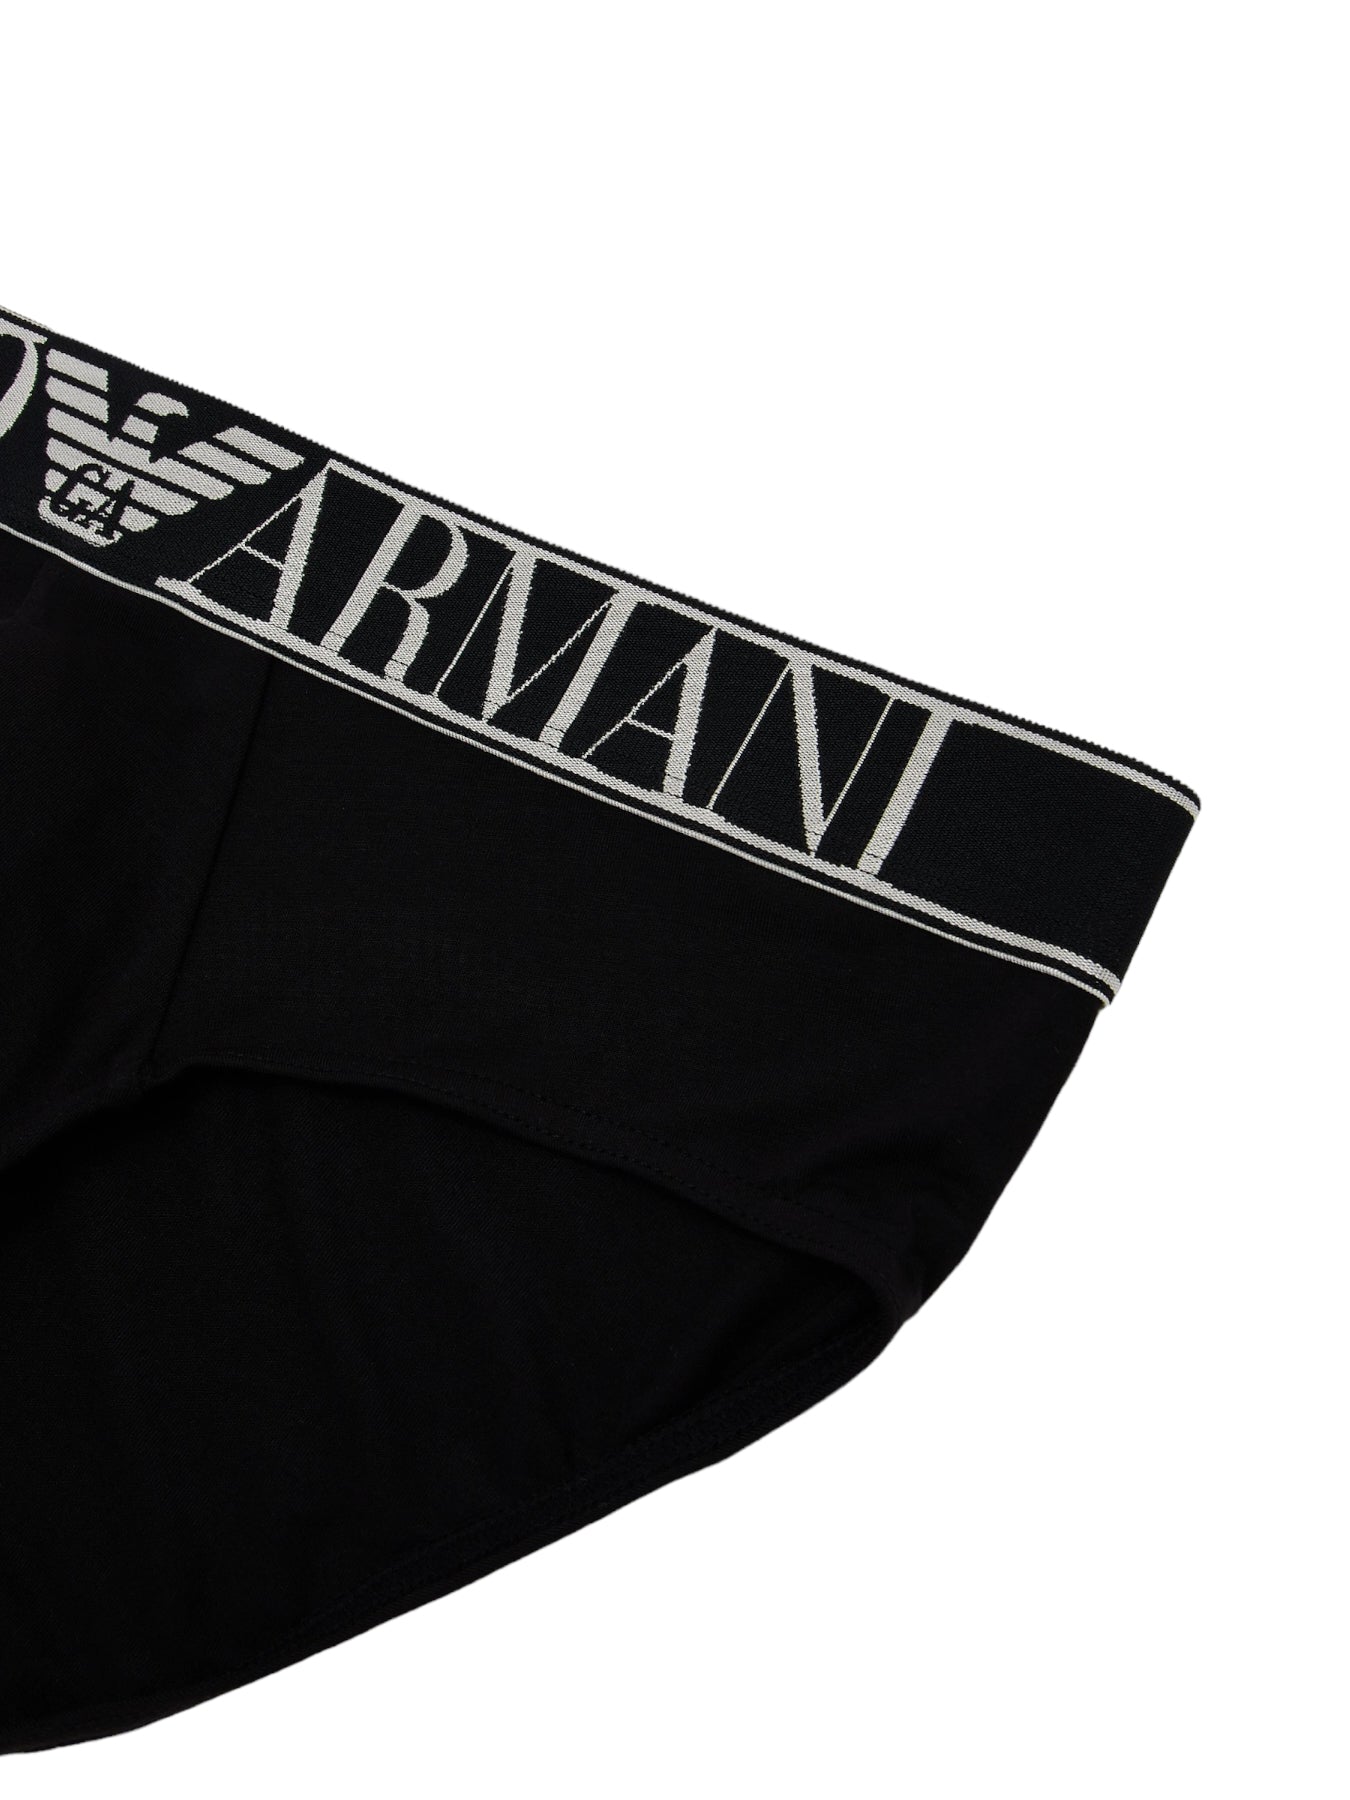 Emporio Armani Underwear Underwear 110814 Black